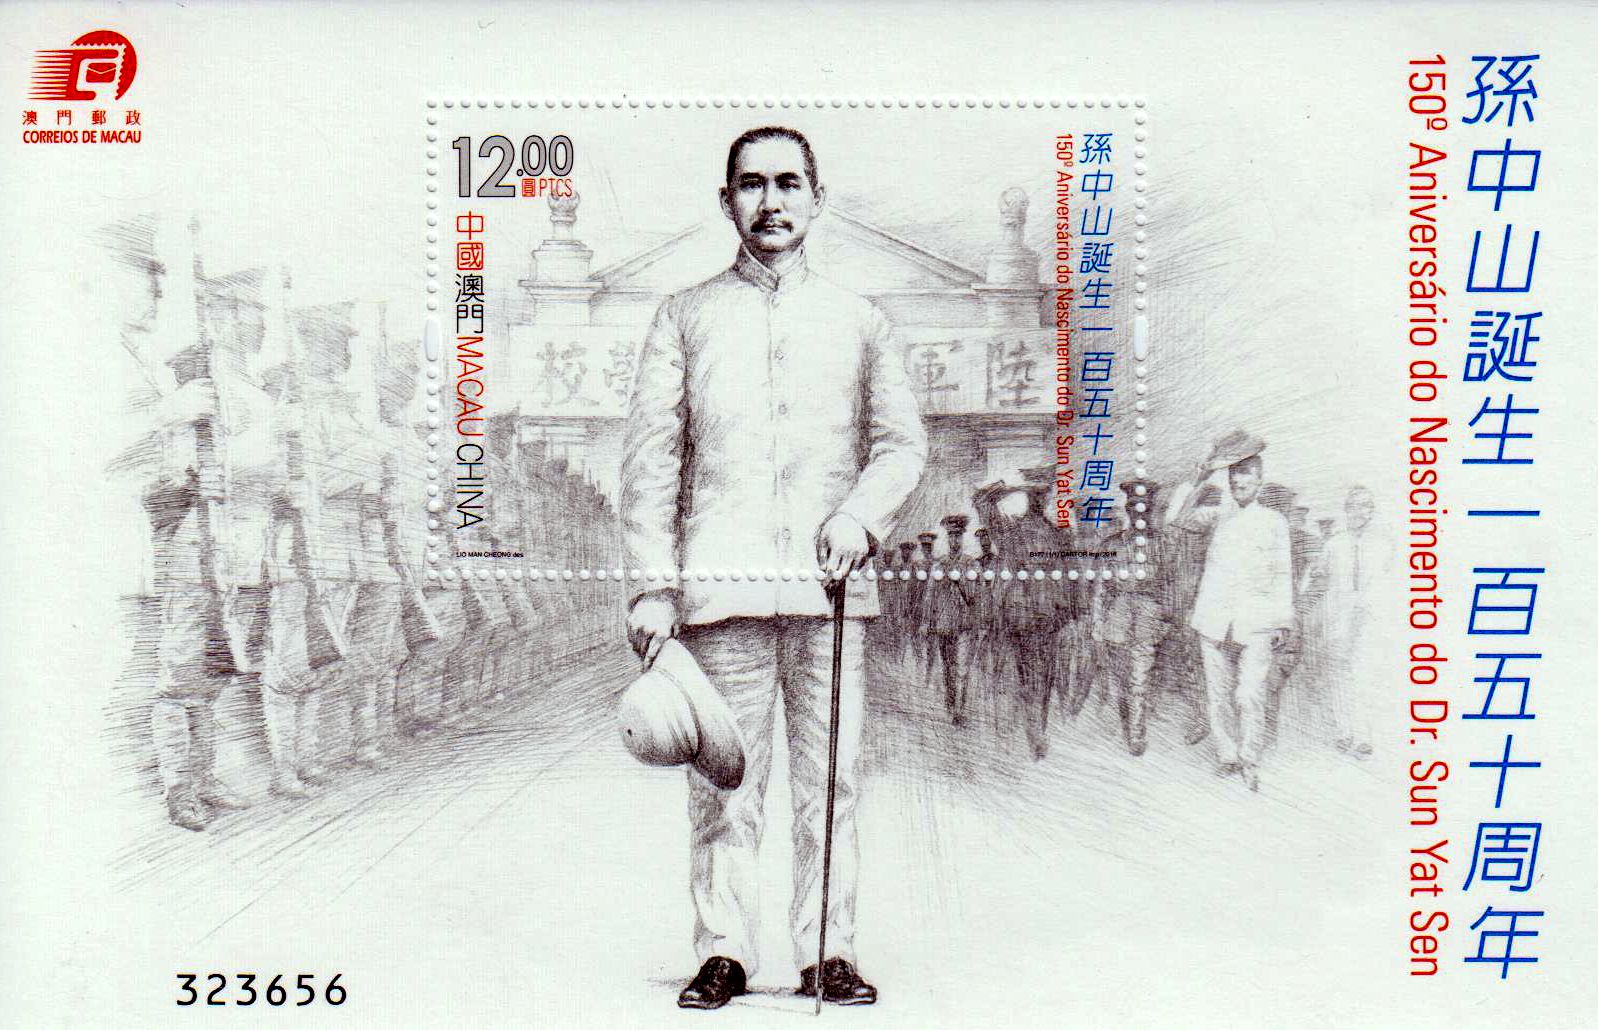 Block: Dr. Sun Yat Sen